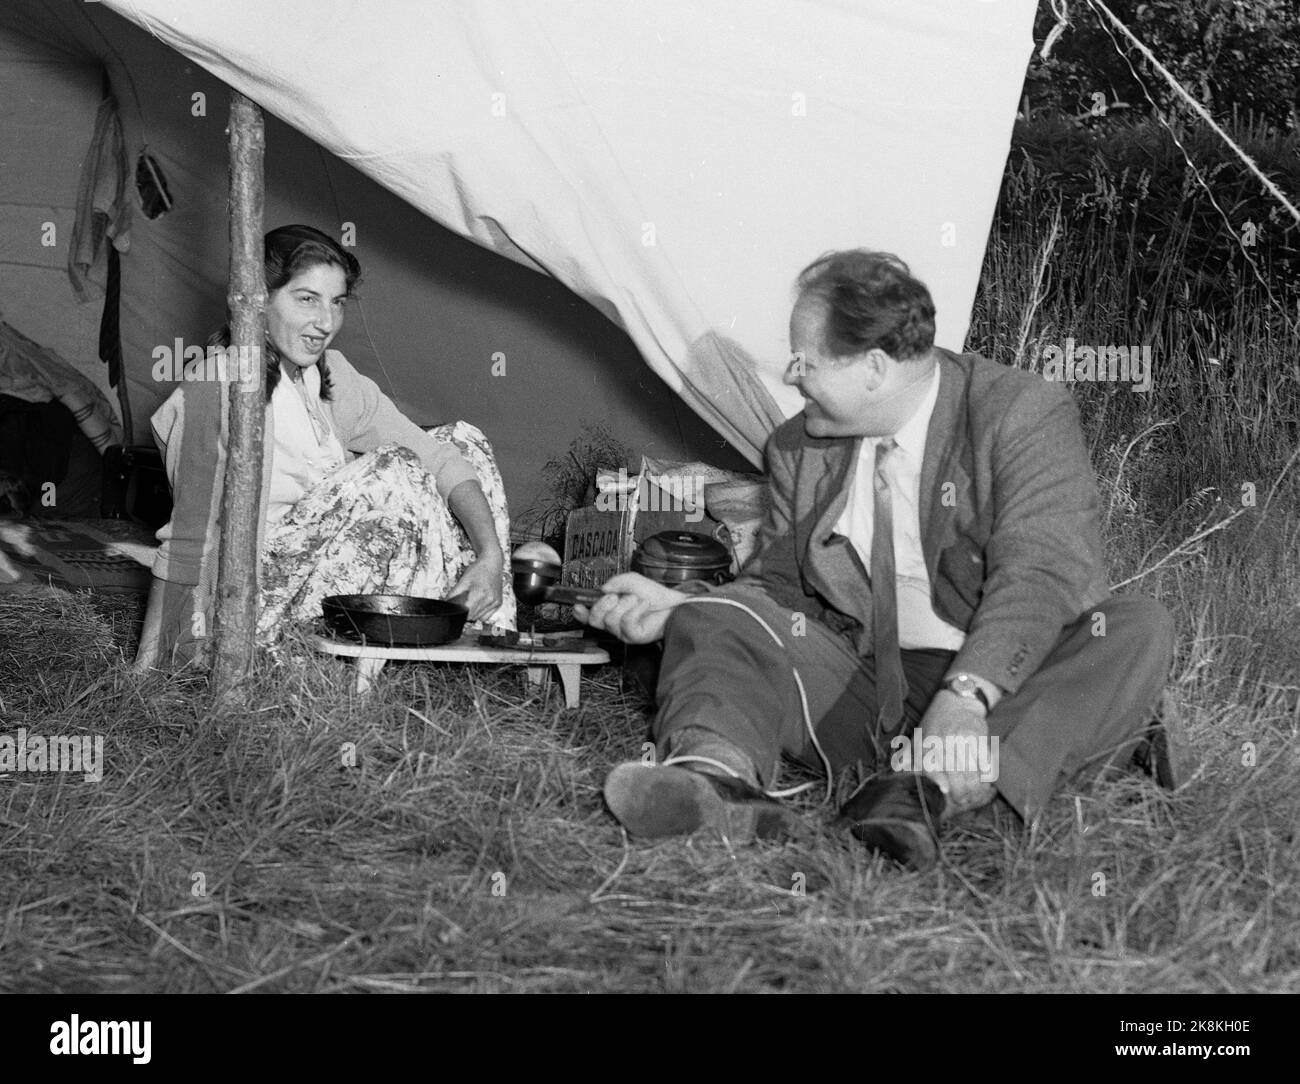 Hokksund 19590709 Norwegian National Broadcasting NRK à l'œuvre sur le terrain. Ici, le journaliste Odd Nordland interview une jeune gitane dans l'ouverture de la tente. Photo: Knoblauch / NTB / NTB Banque D'Images